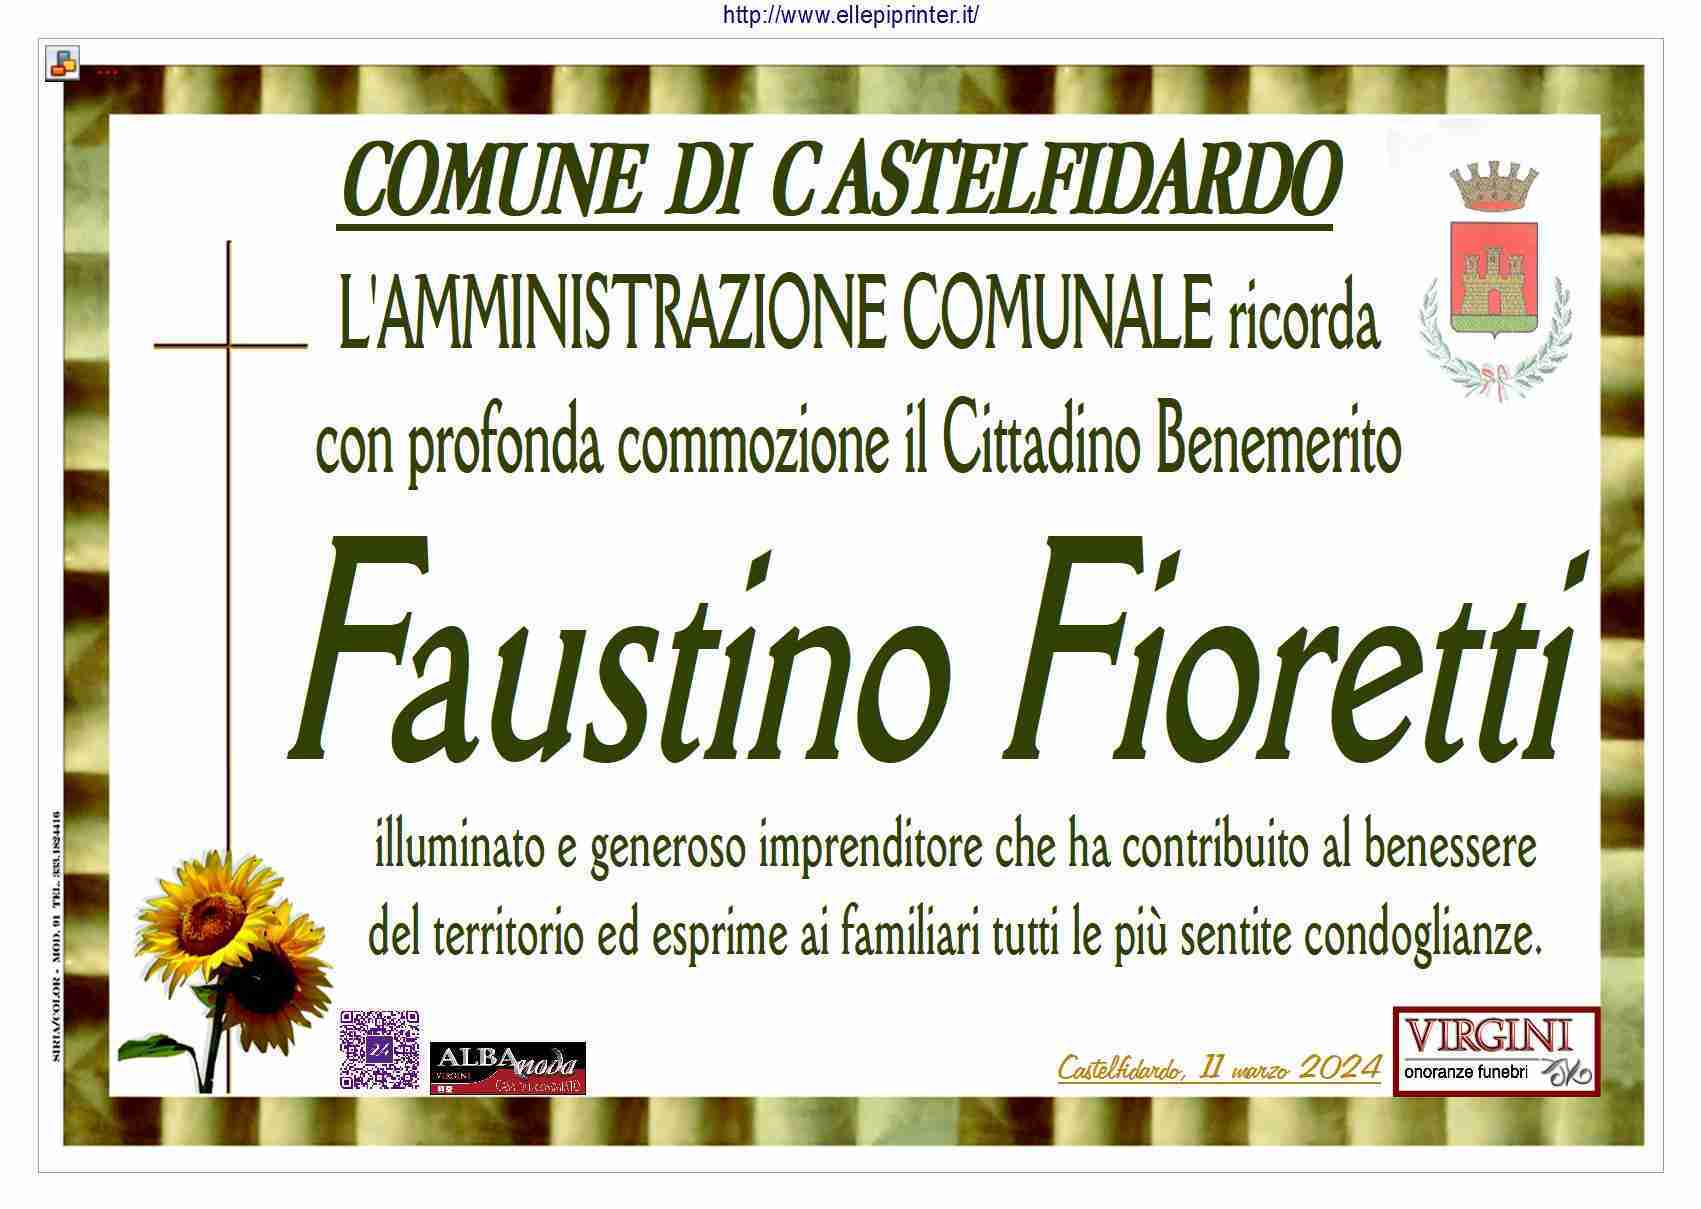 Faustino Fioretti